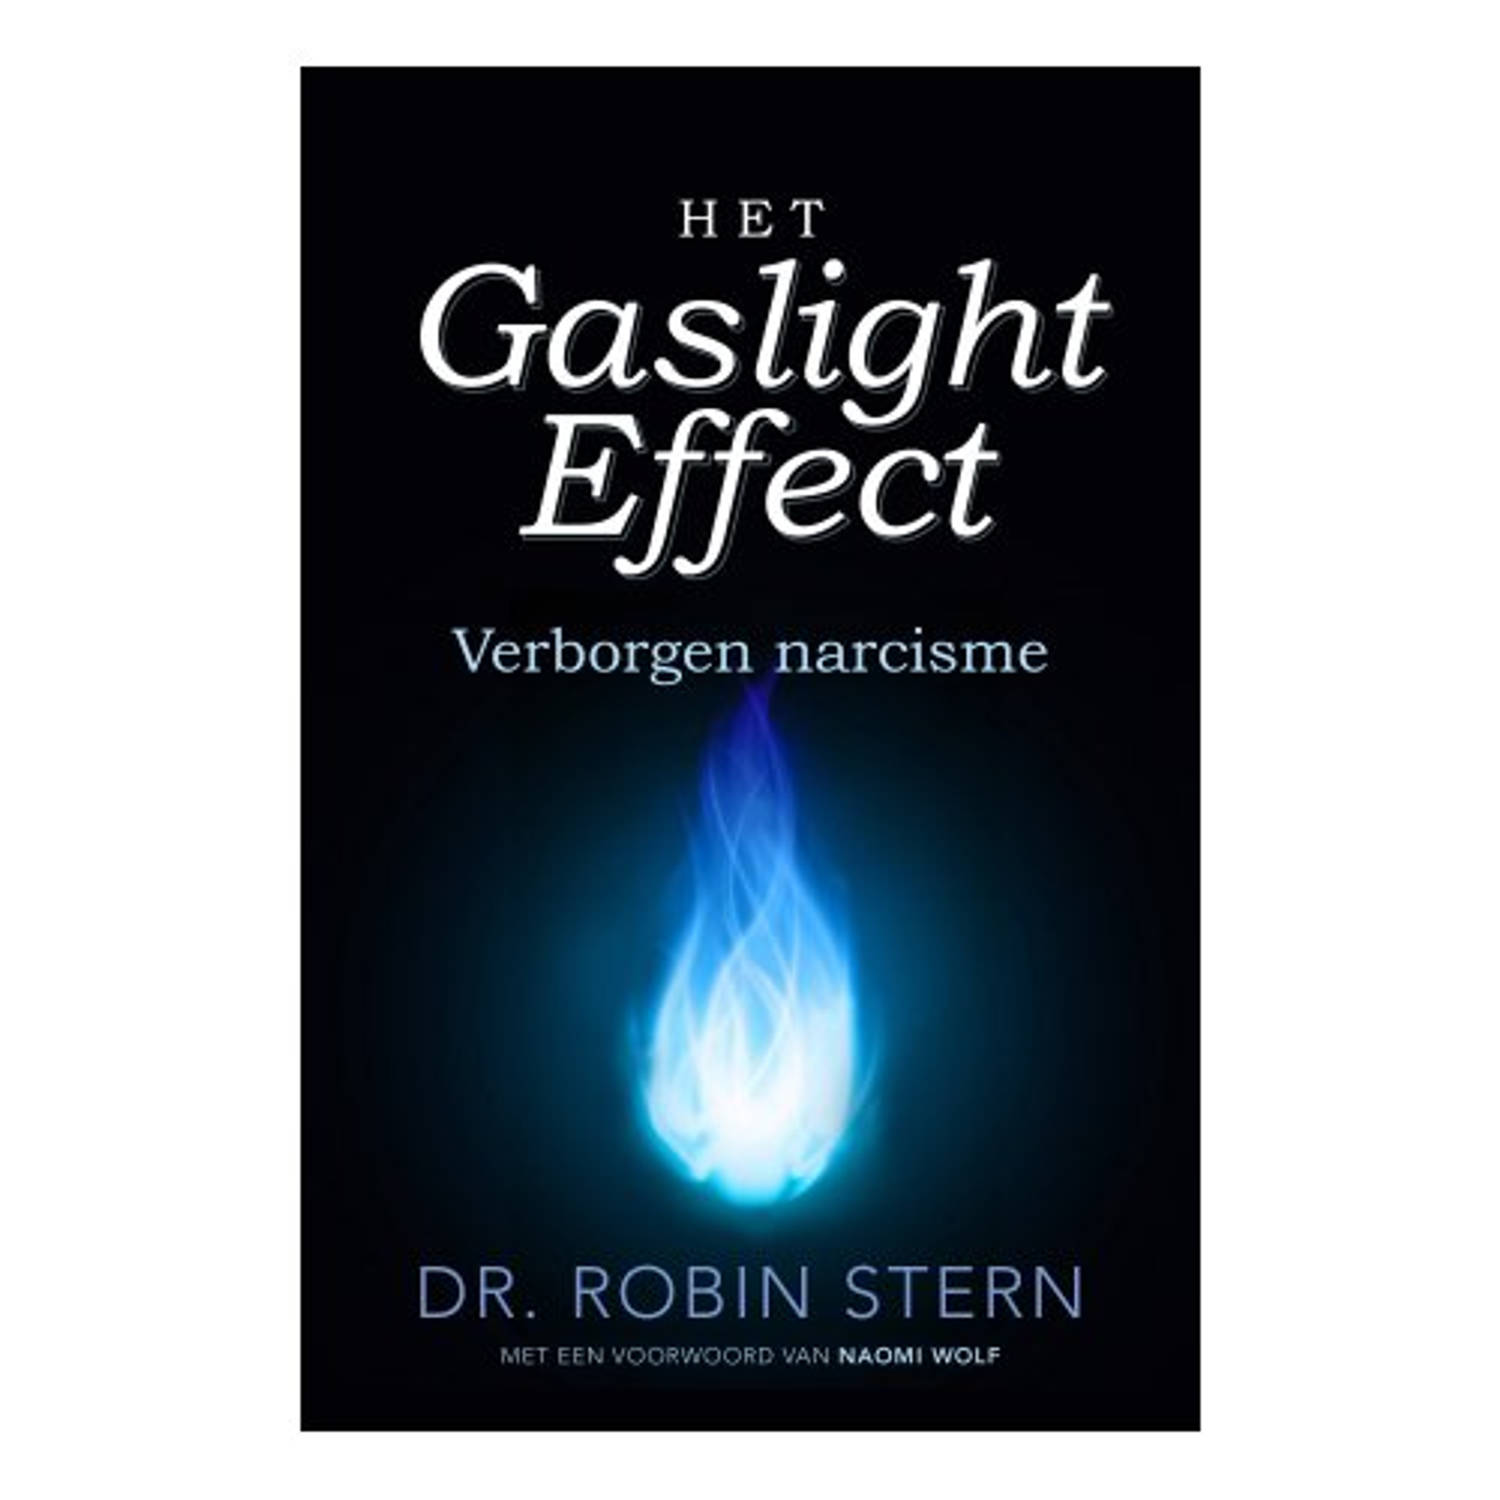 Het Gaslighteffect